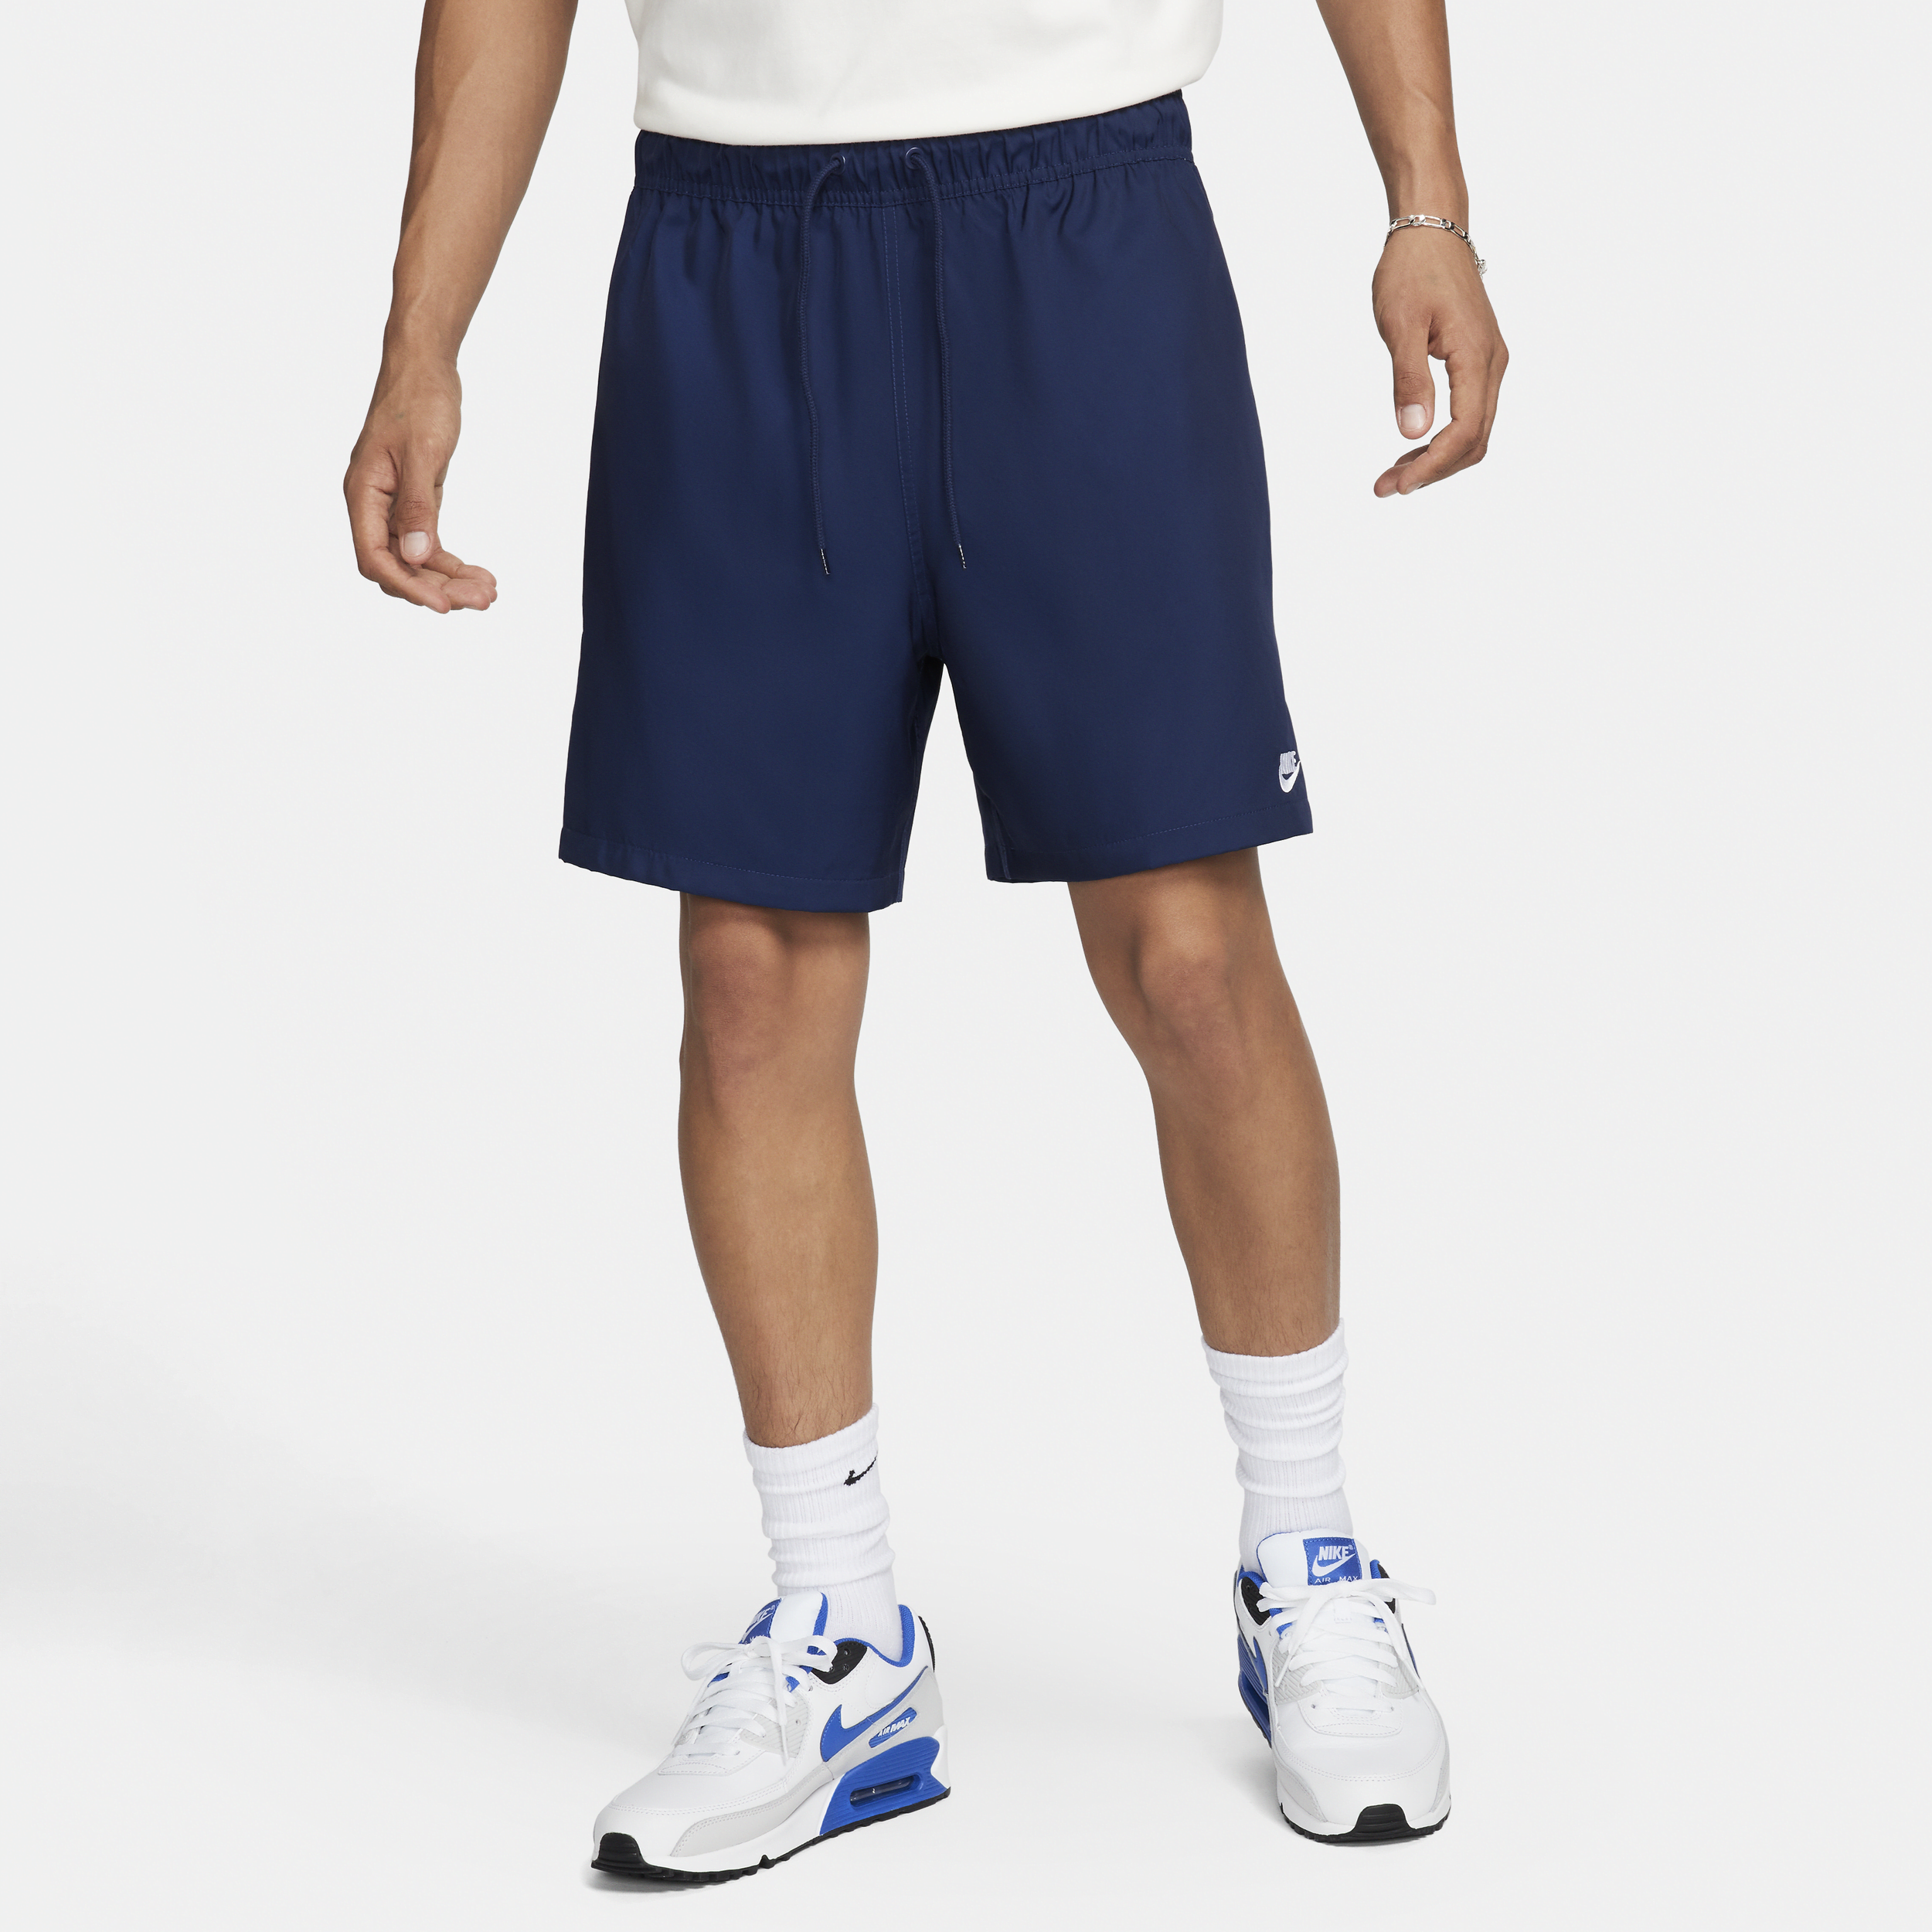 Shorts Flow in tessuto Nike Club – Uomo - Blu